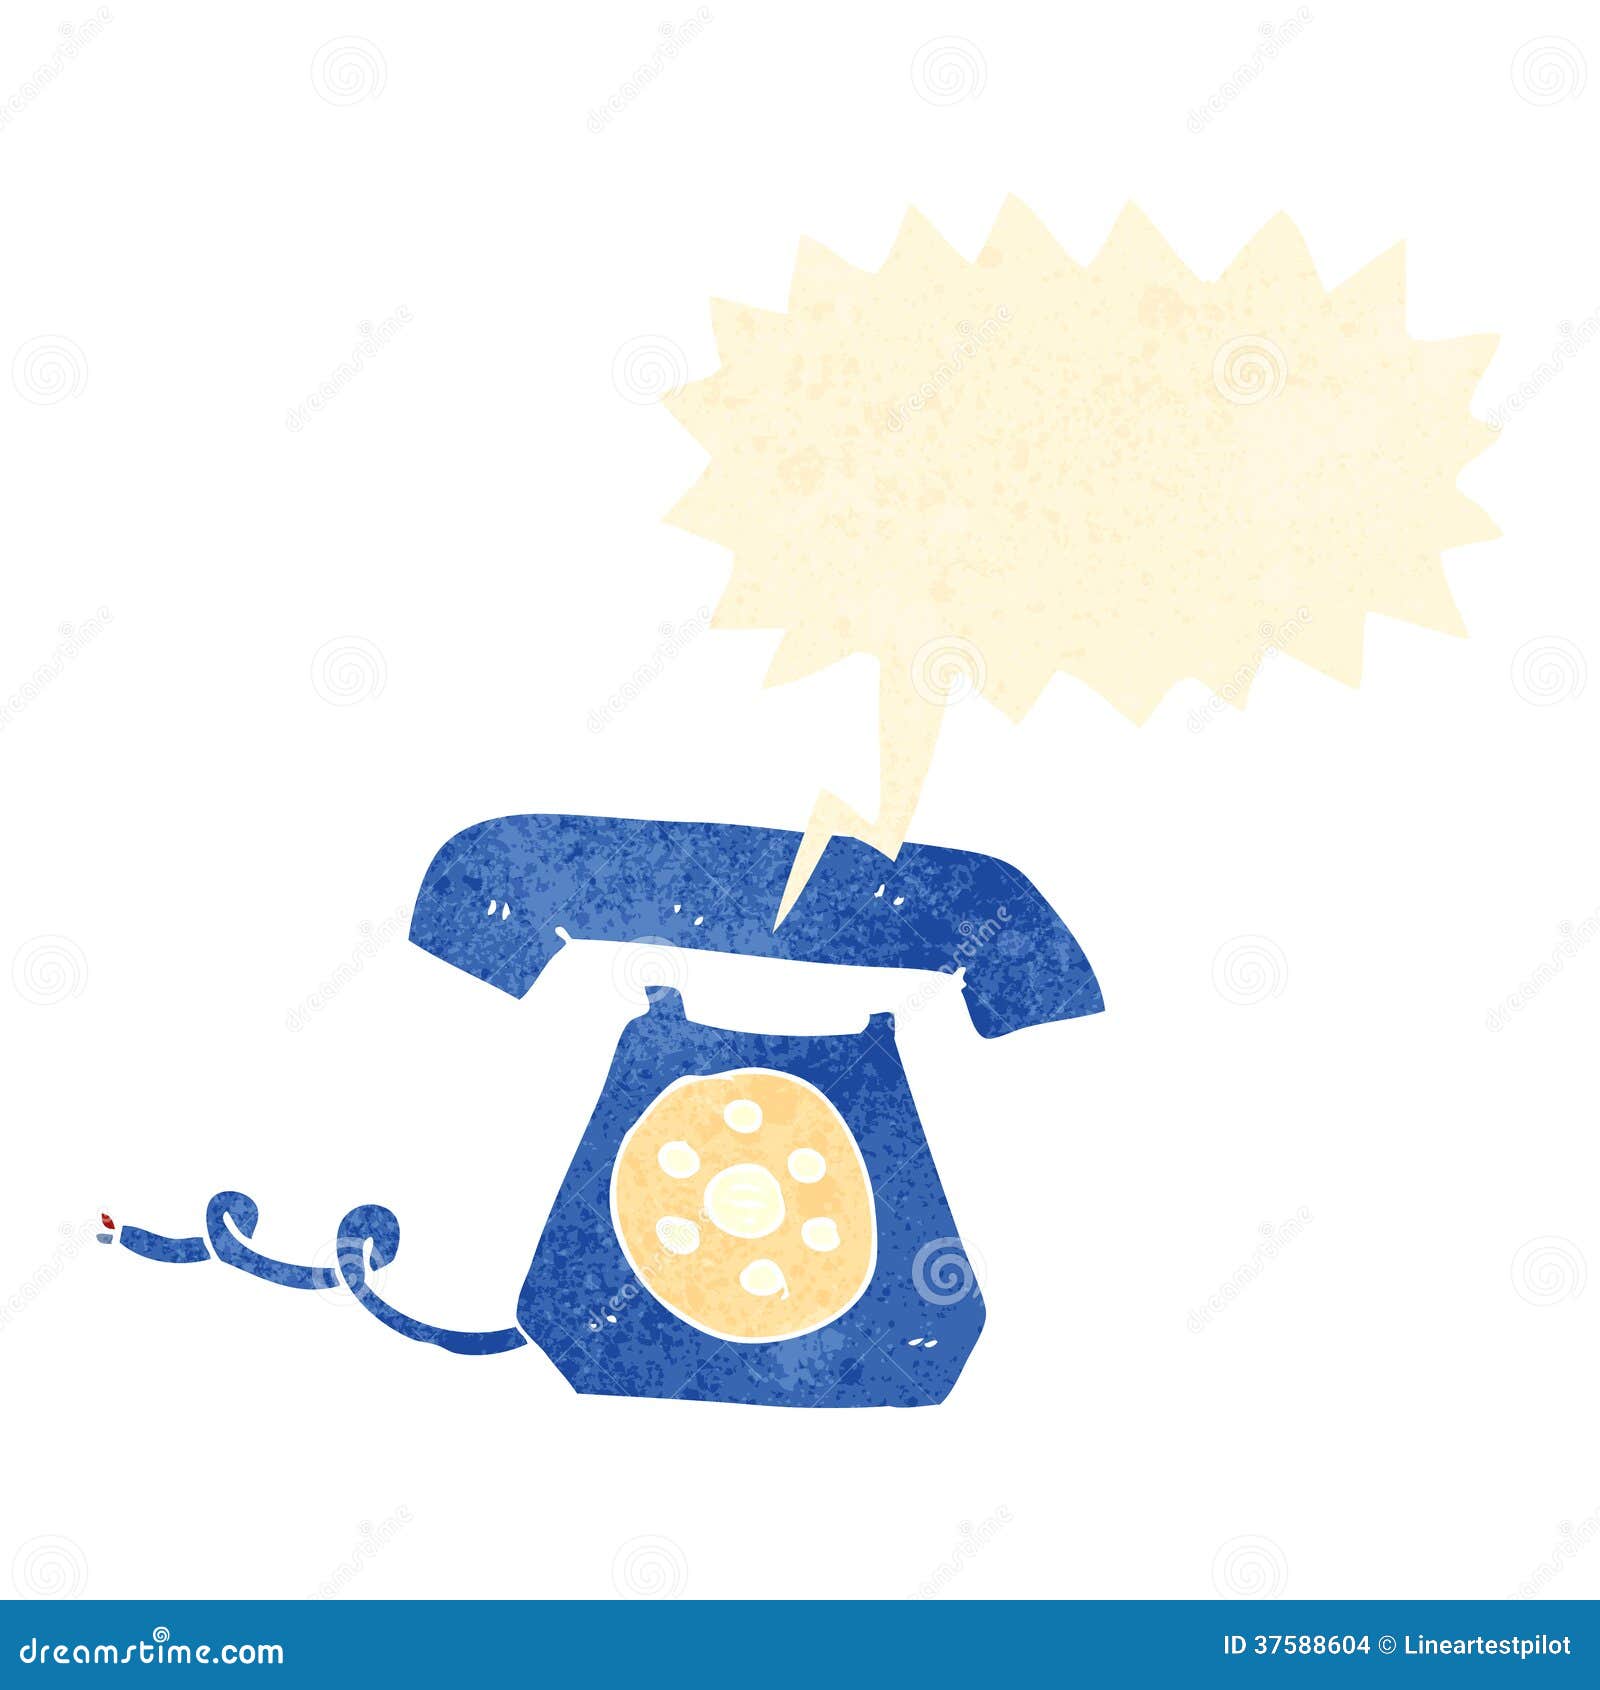 Retro Cartoon Ringing Telephone Stock Images - Image: 37588604